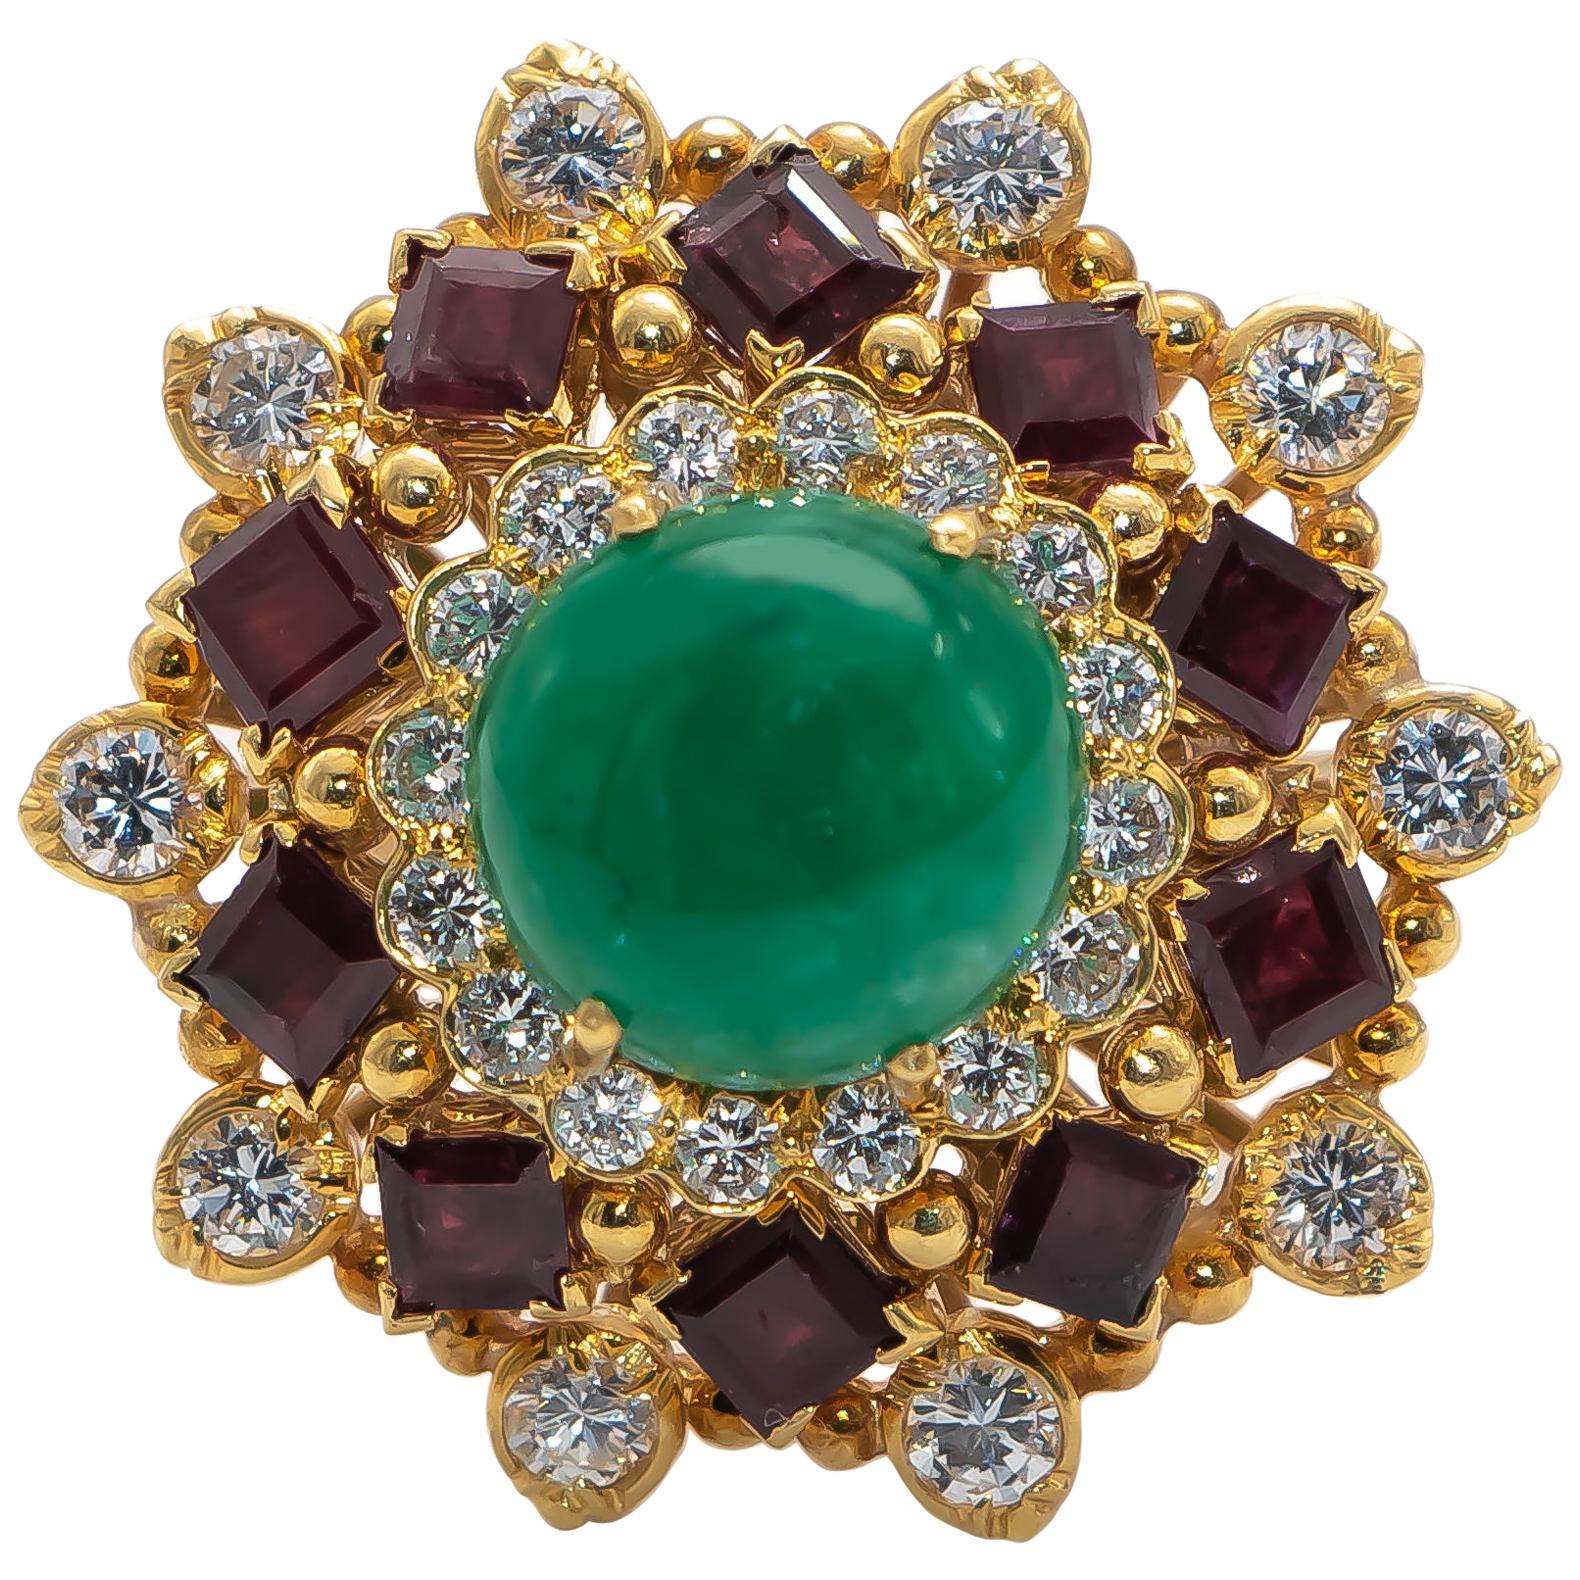 Cabochon Emerald 5 Carat Ring with Rubies 2.4 Carat and Diamonds 1.60 Carat